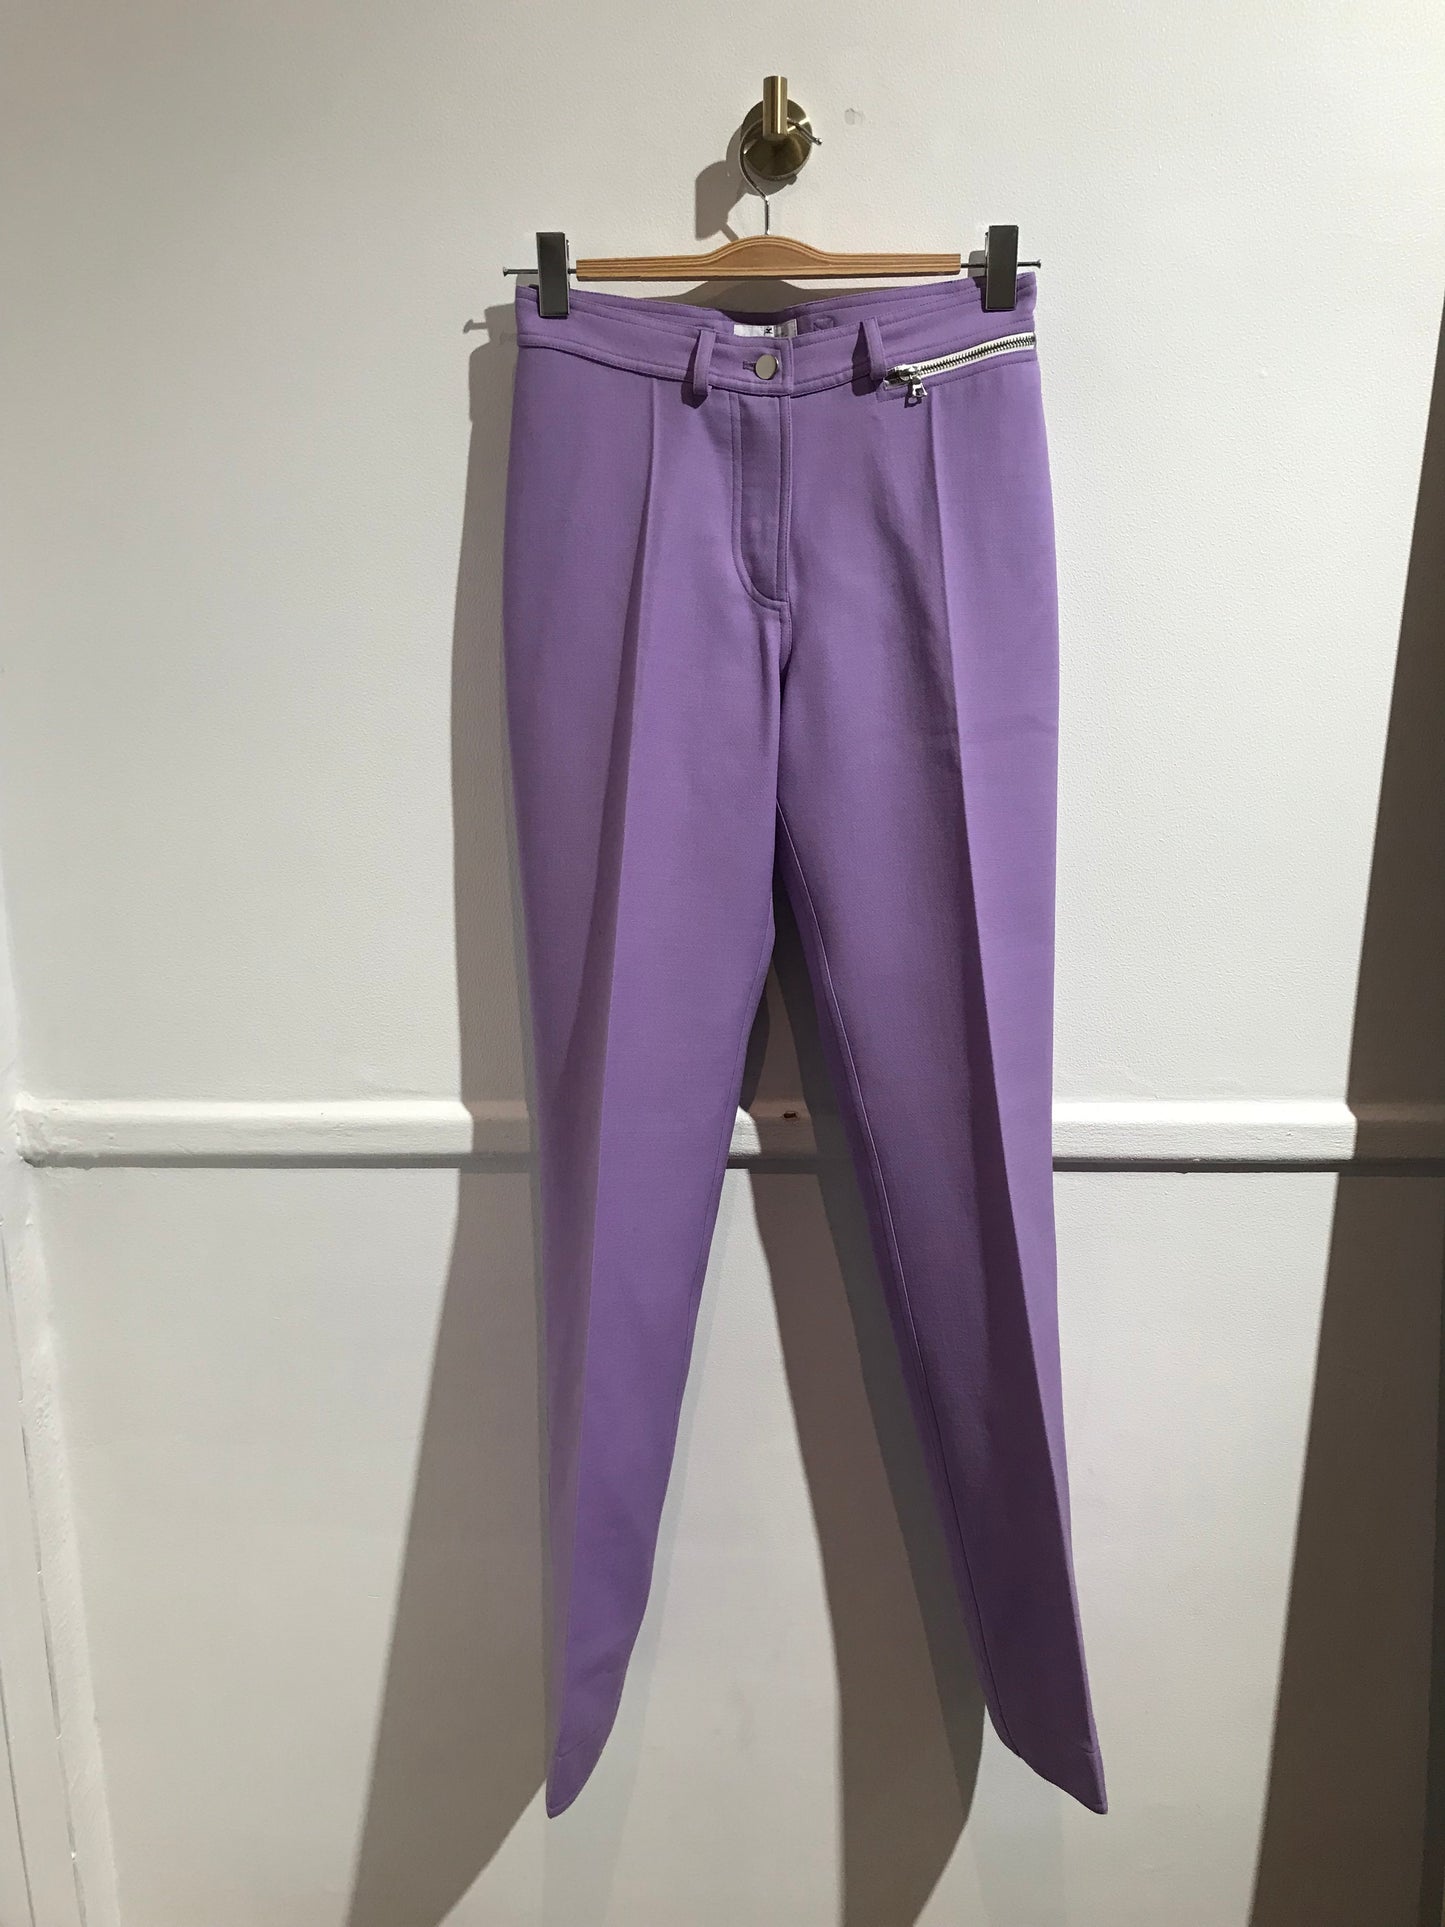 Pantalon Courrèges violet T.36